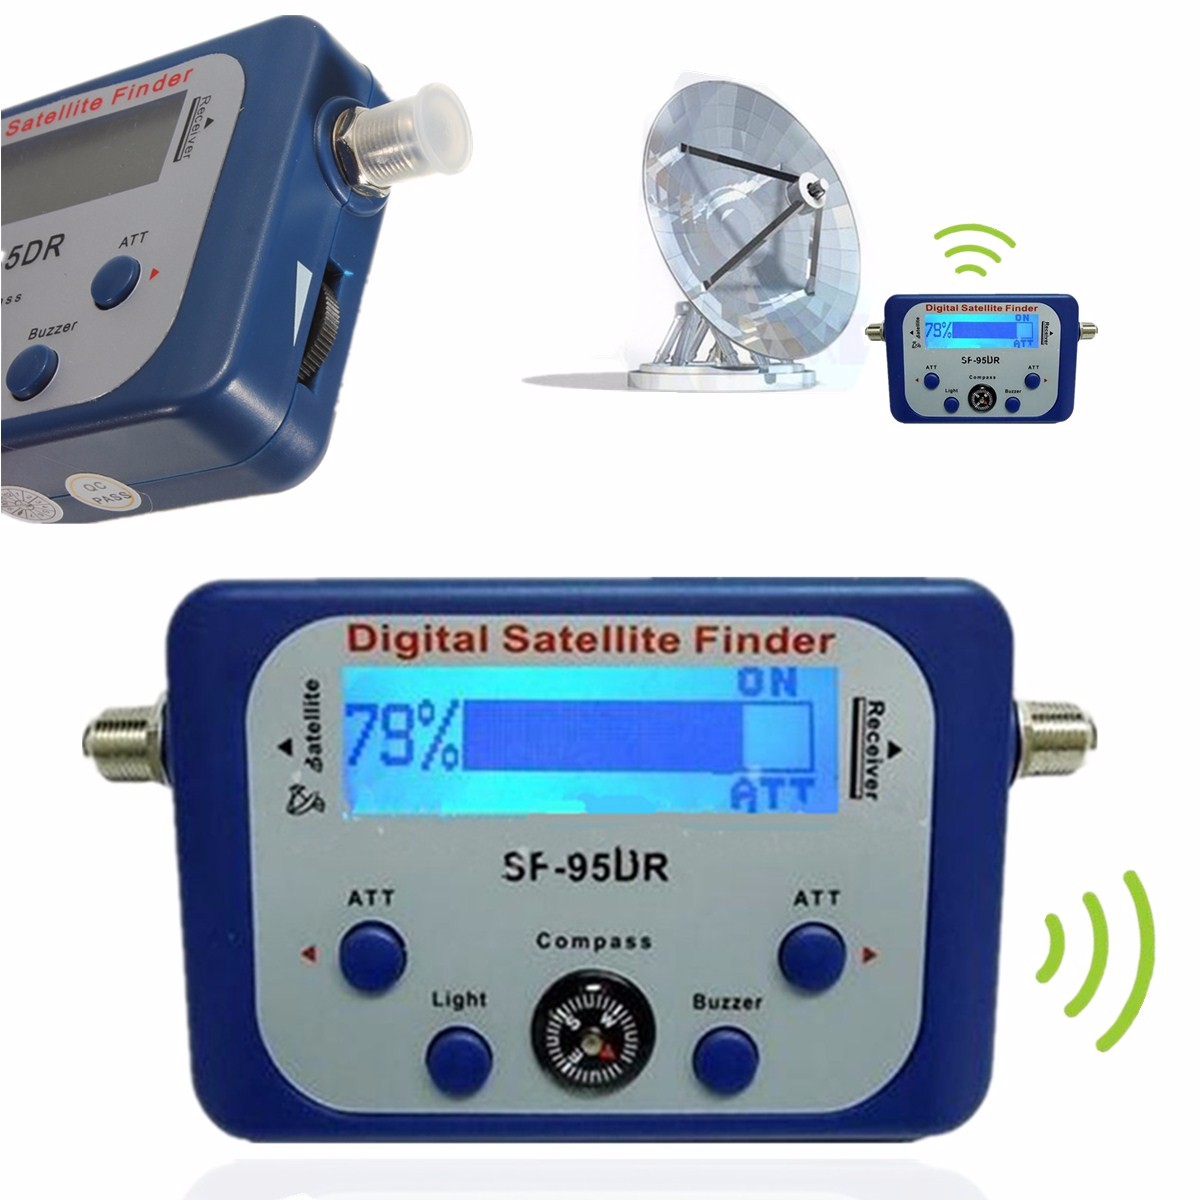 Digital Satellite Finder écran LCD Détection de Satellite Appareil de Mesure Satellite Force du Signal Dish Sat Compass avec Signal sonore intégré 